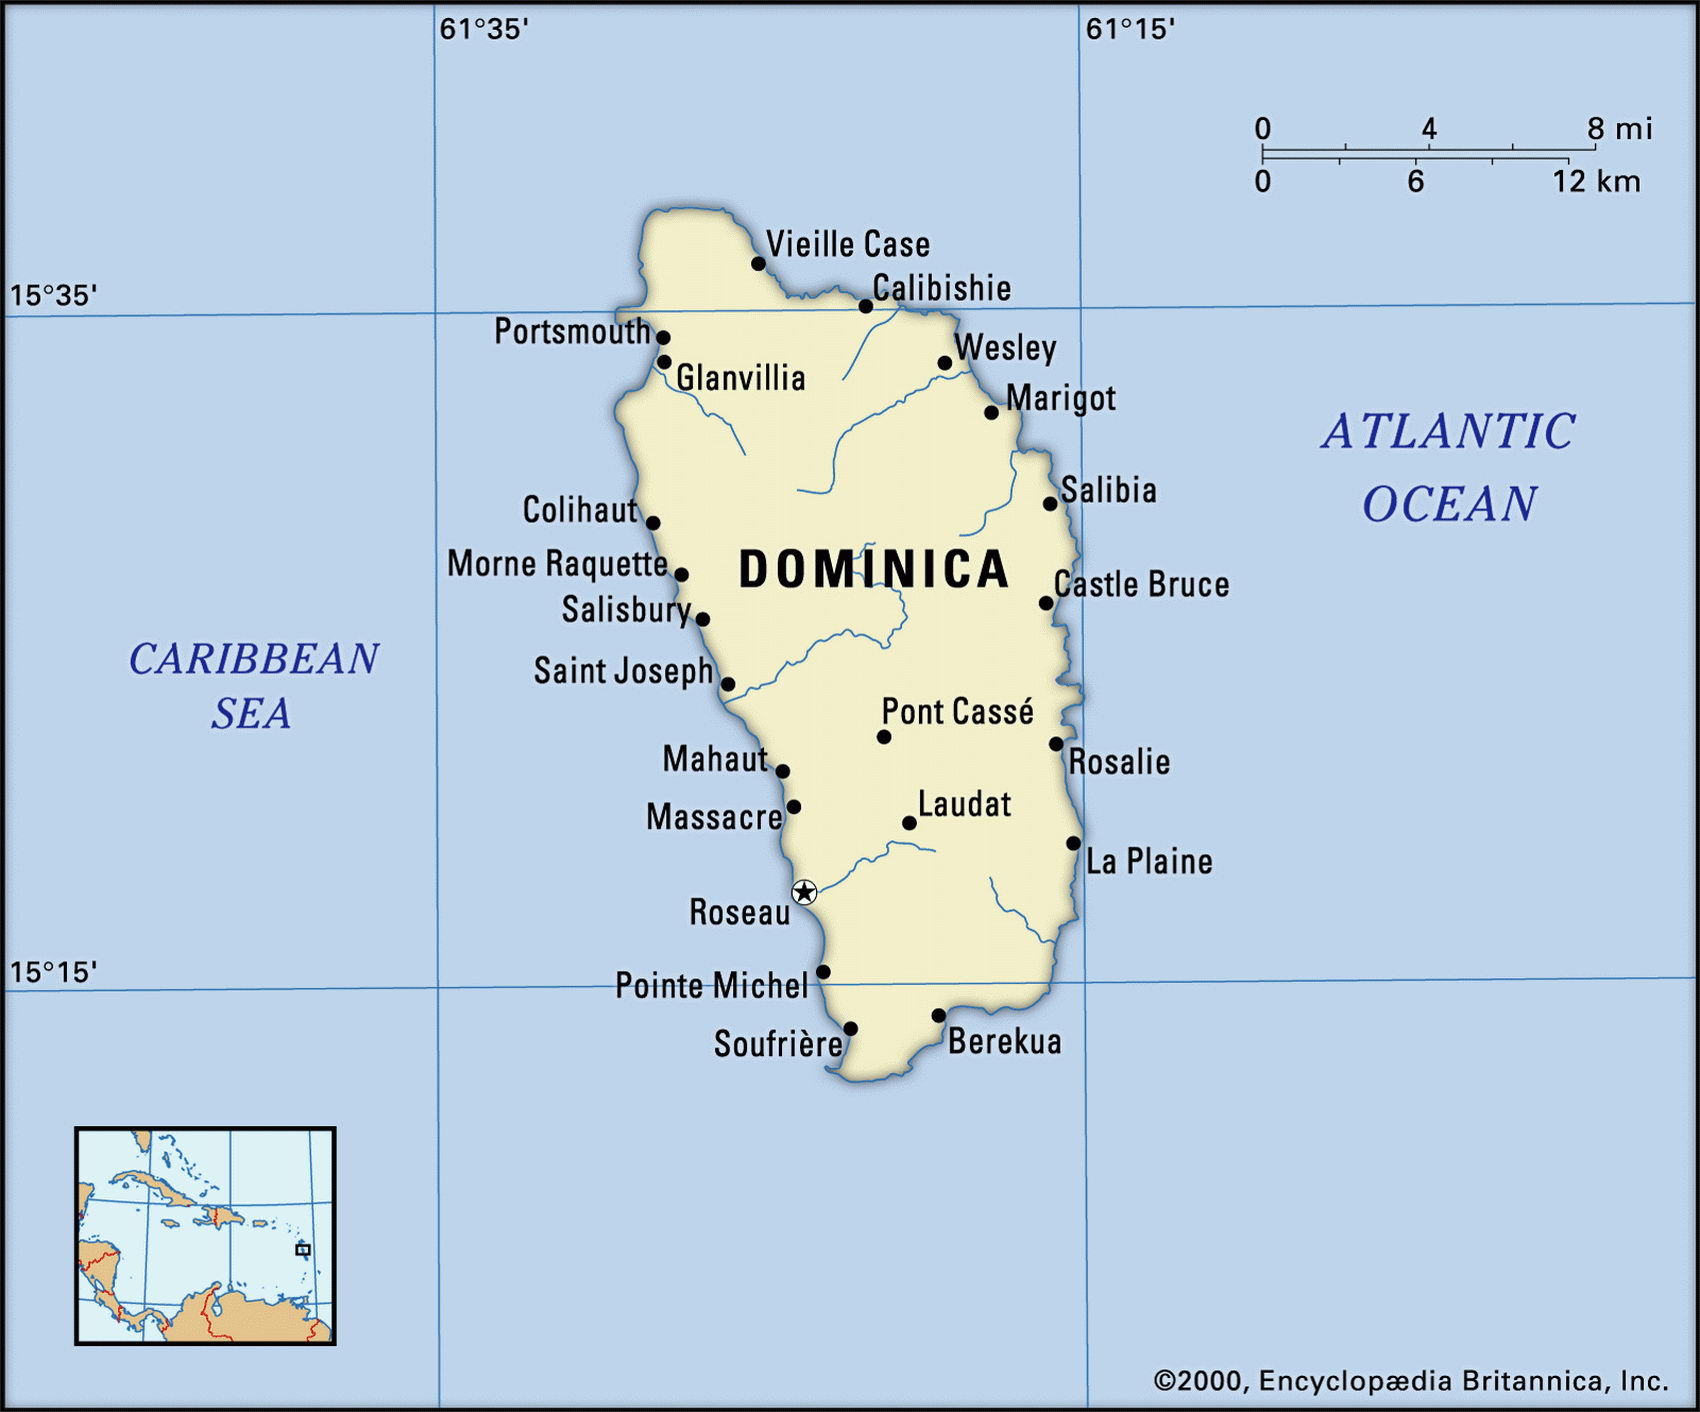 Доминика на карте мира